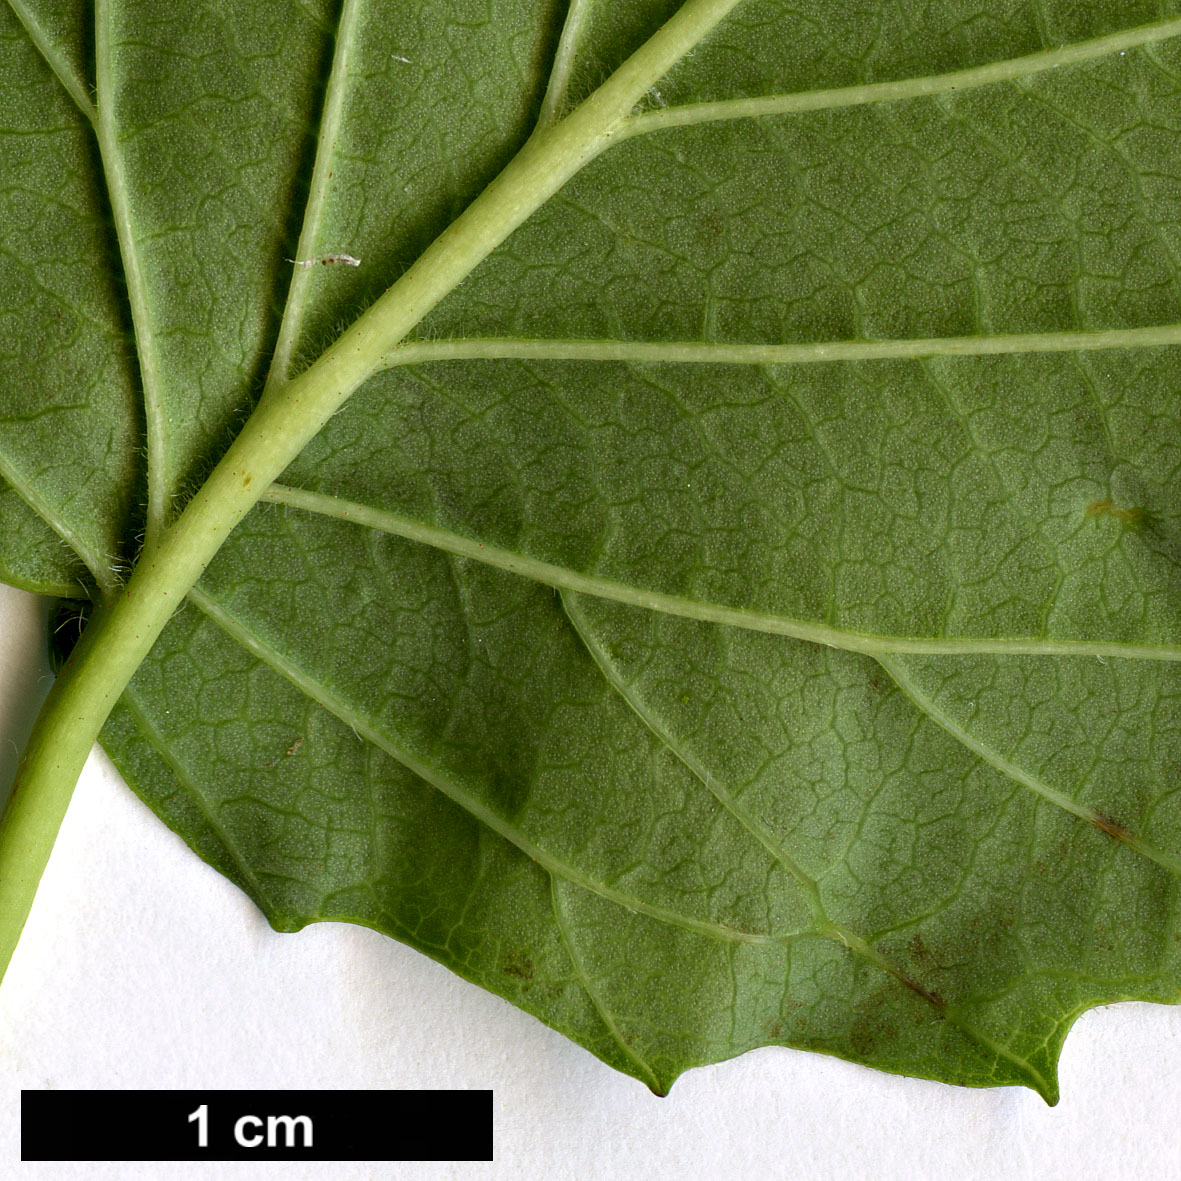 High resolution image: Family: Adoxaceae - Genus: Viburnum - Taxon: recognitum